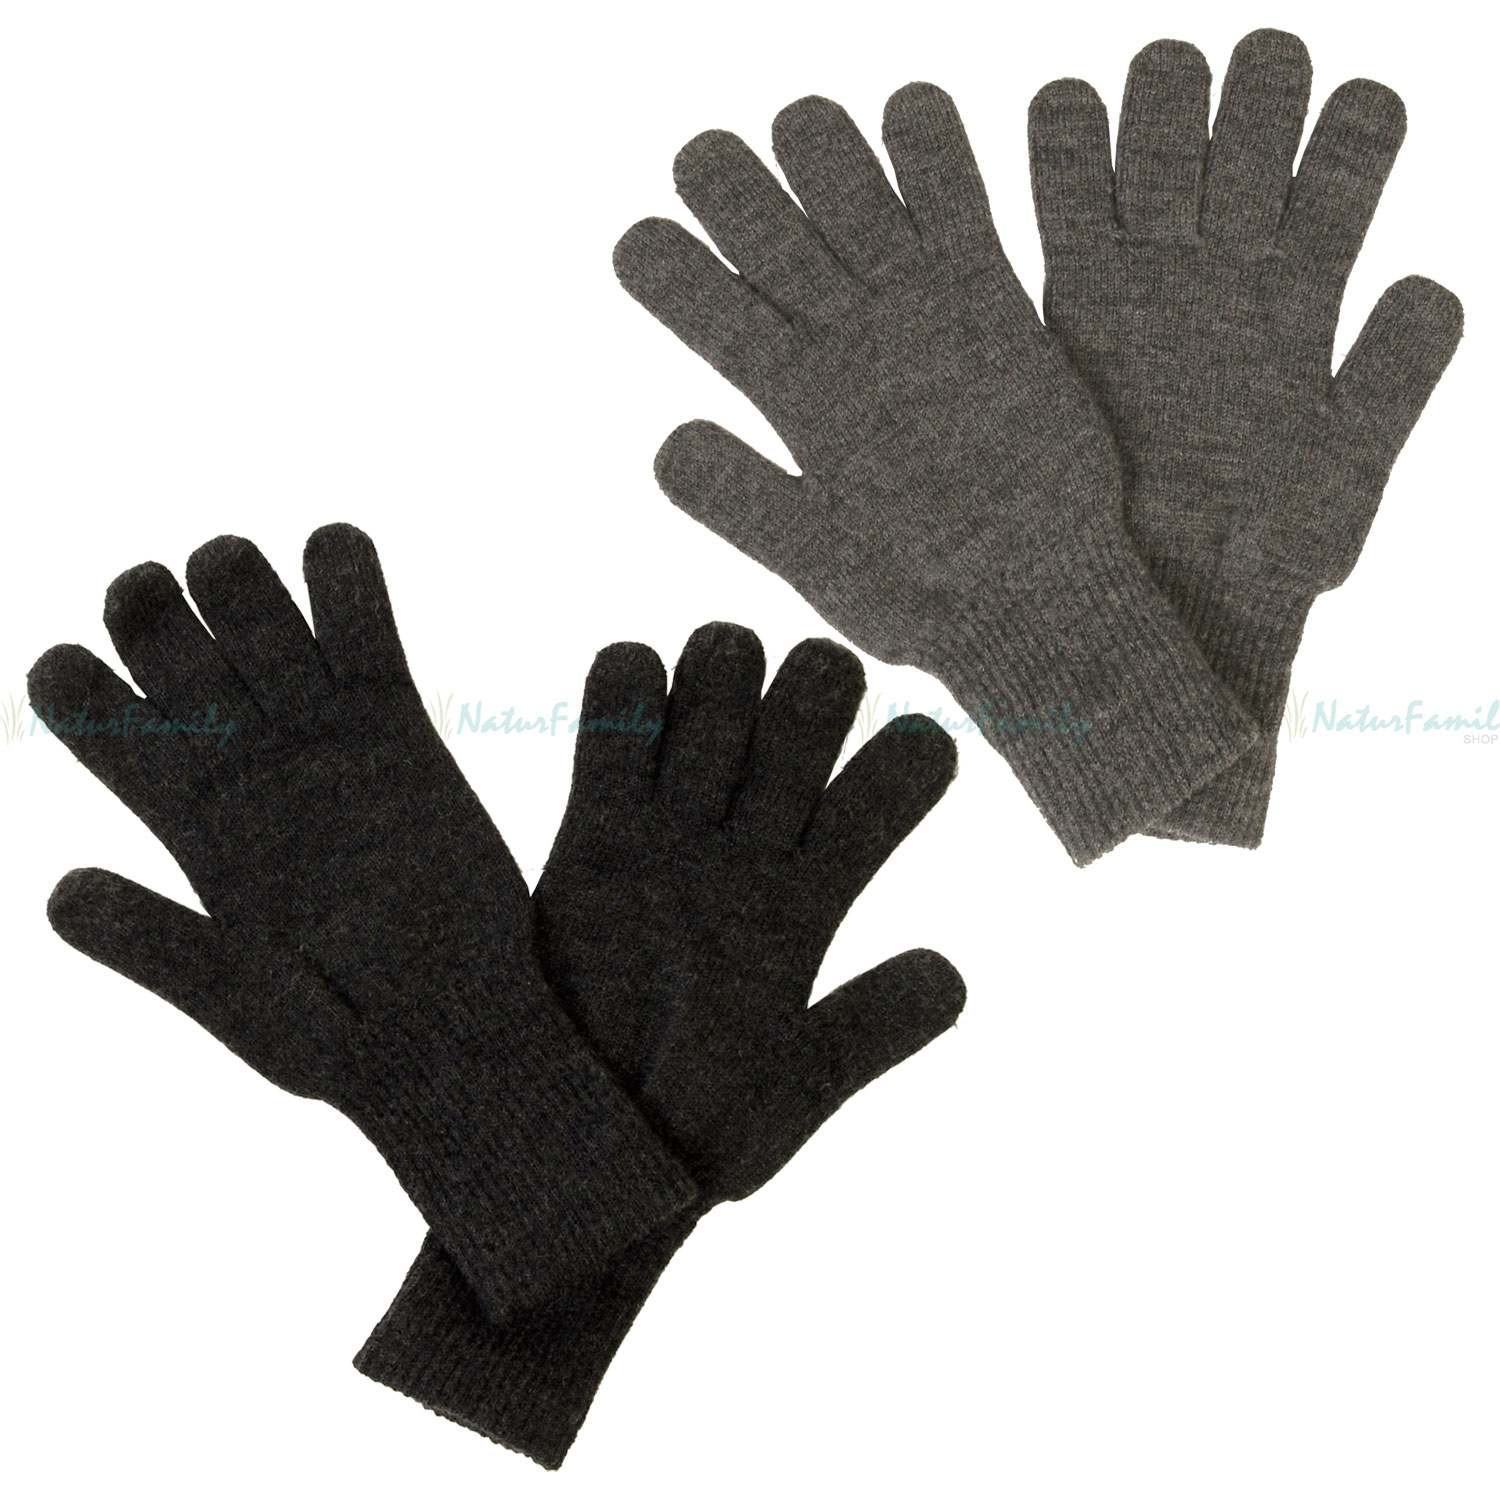 für Kinder Naturtextilien - NaturFamily Fingerhandschuhe Babys, Merino Shop Reiff Strick Handschuhe ganze Schurwolle - und 100 Familie %